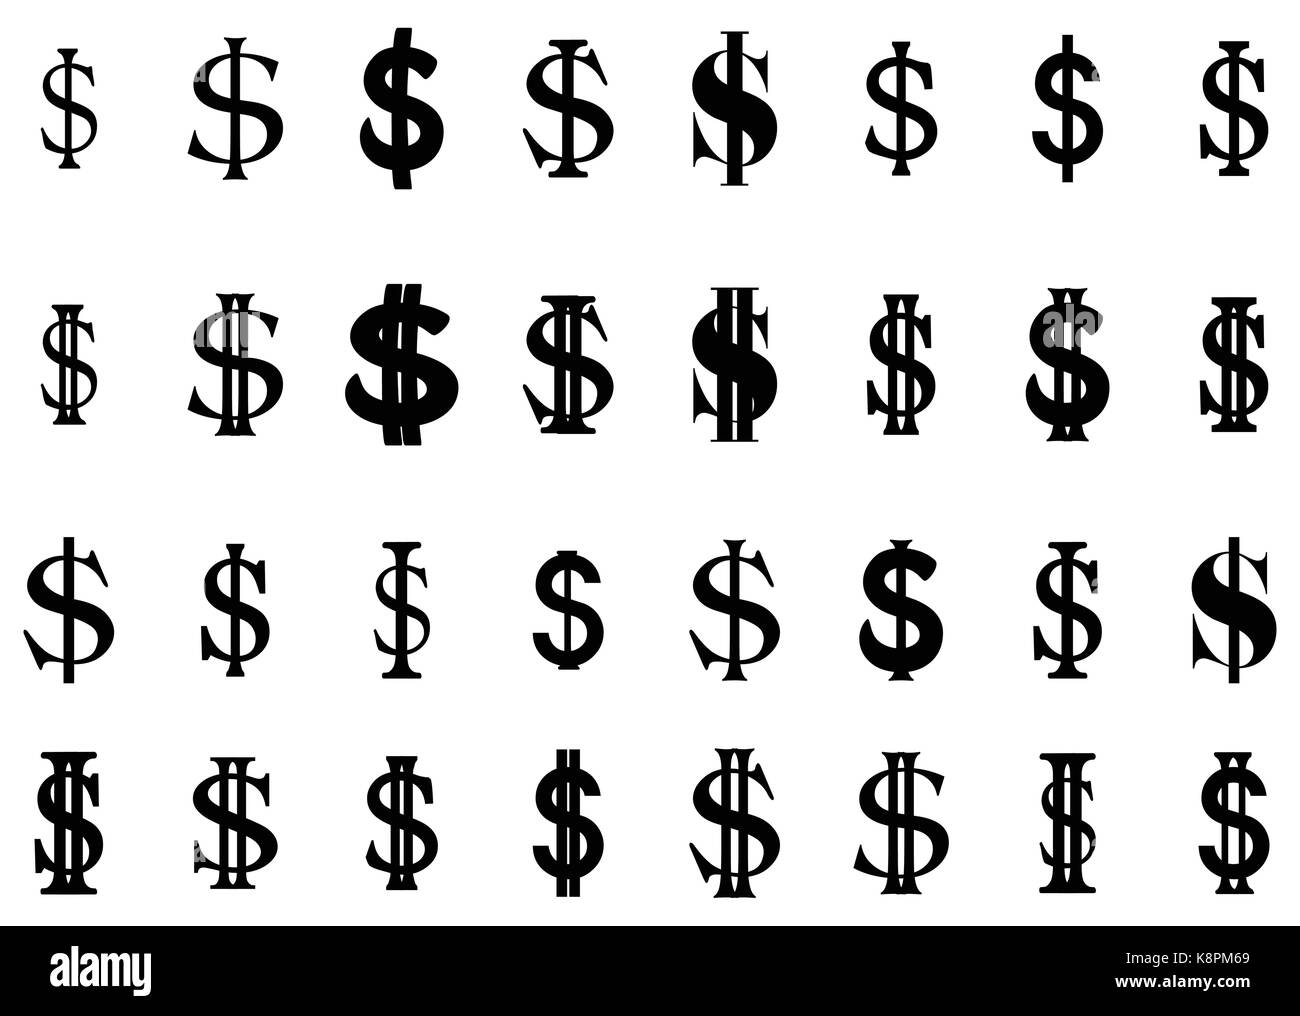 Conjunto de piso simple signo de dólar EE.UU. Silhouette ilustración vectorial aislar sobre fondo blanco. Ilustración del Vector